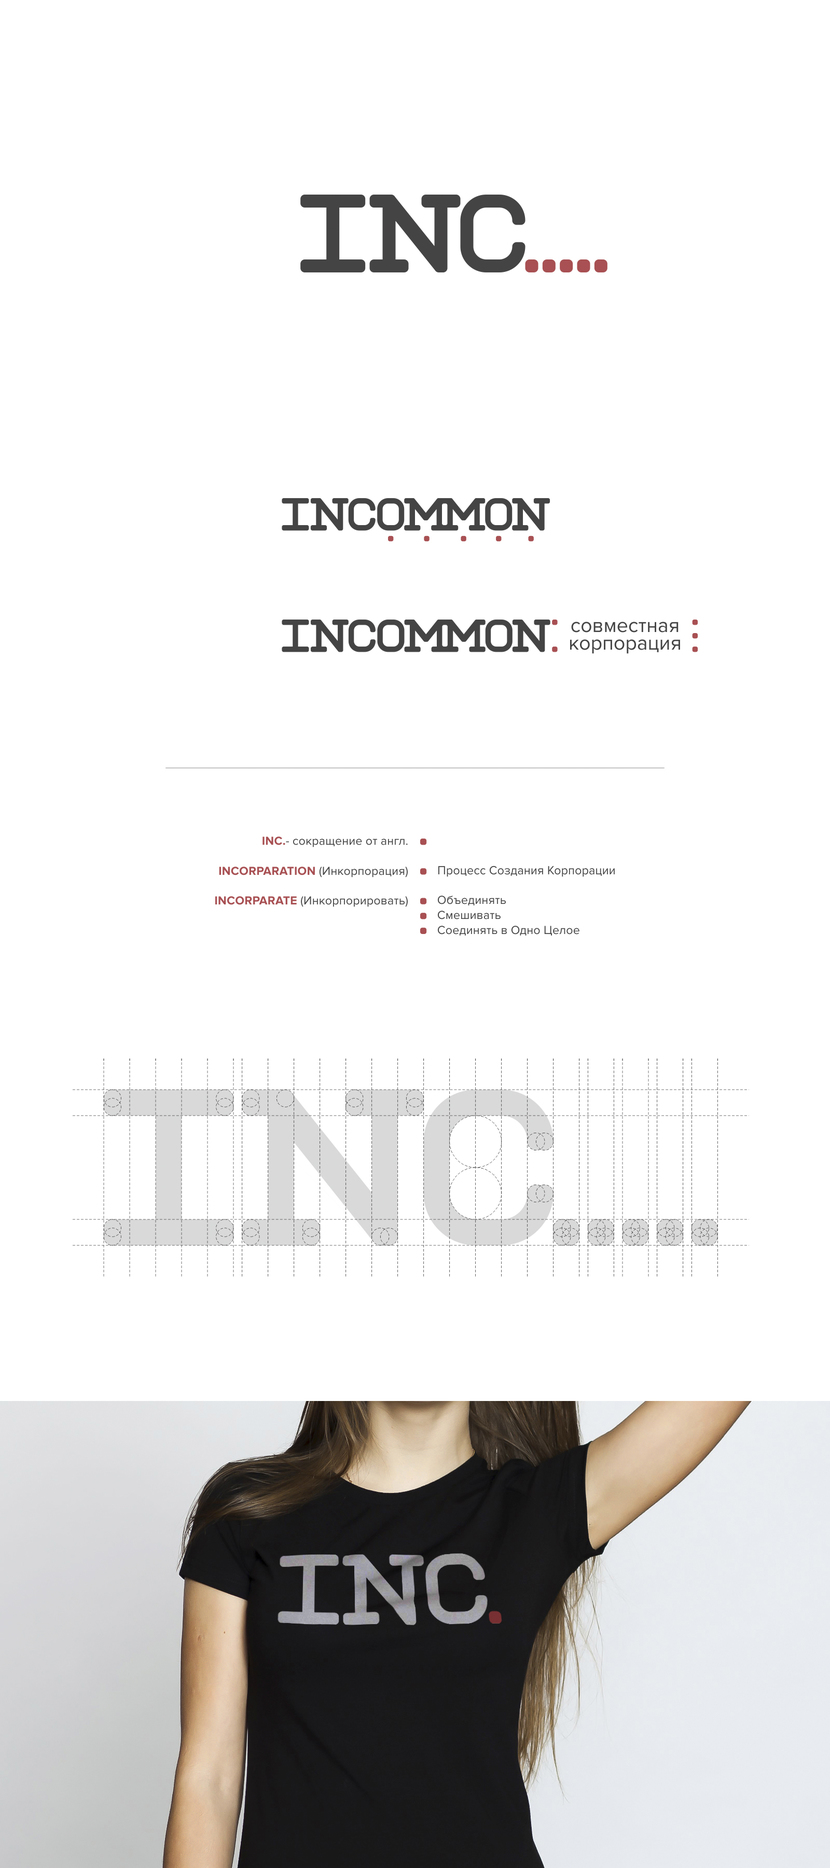 INCOMMON лого и фирменный стиль для коворкинга